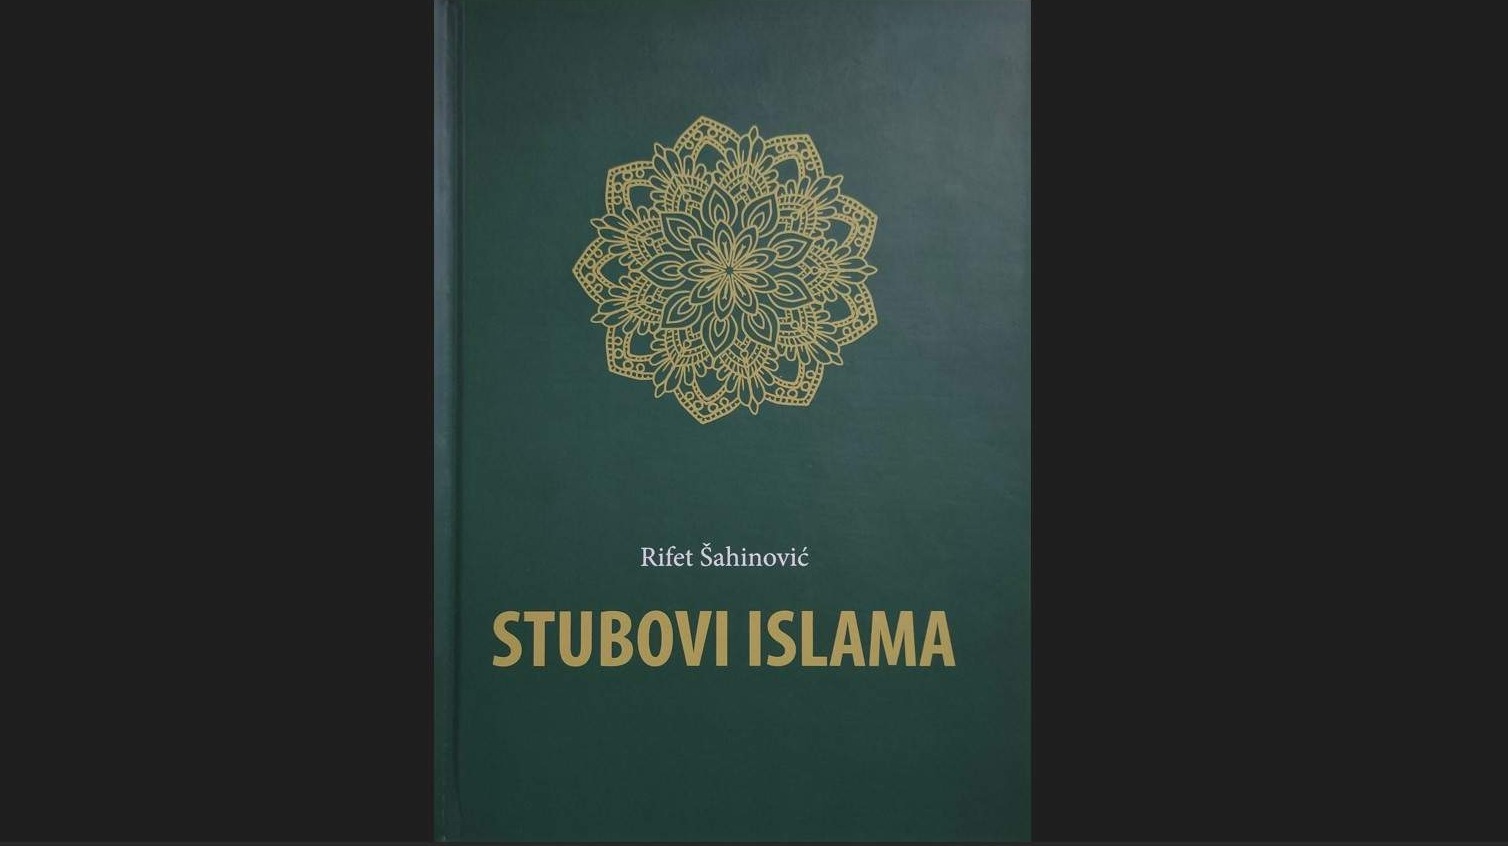 Knjiga "Stubovi islama" hfz. prof. dr. Rifeta Šahinovića, knjiga o izazovima današnjice